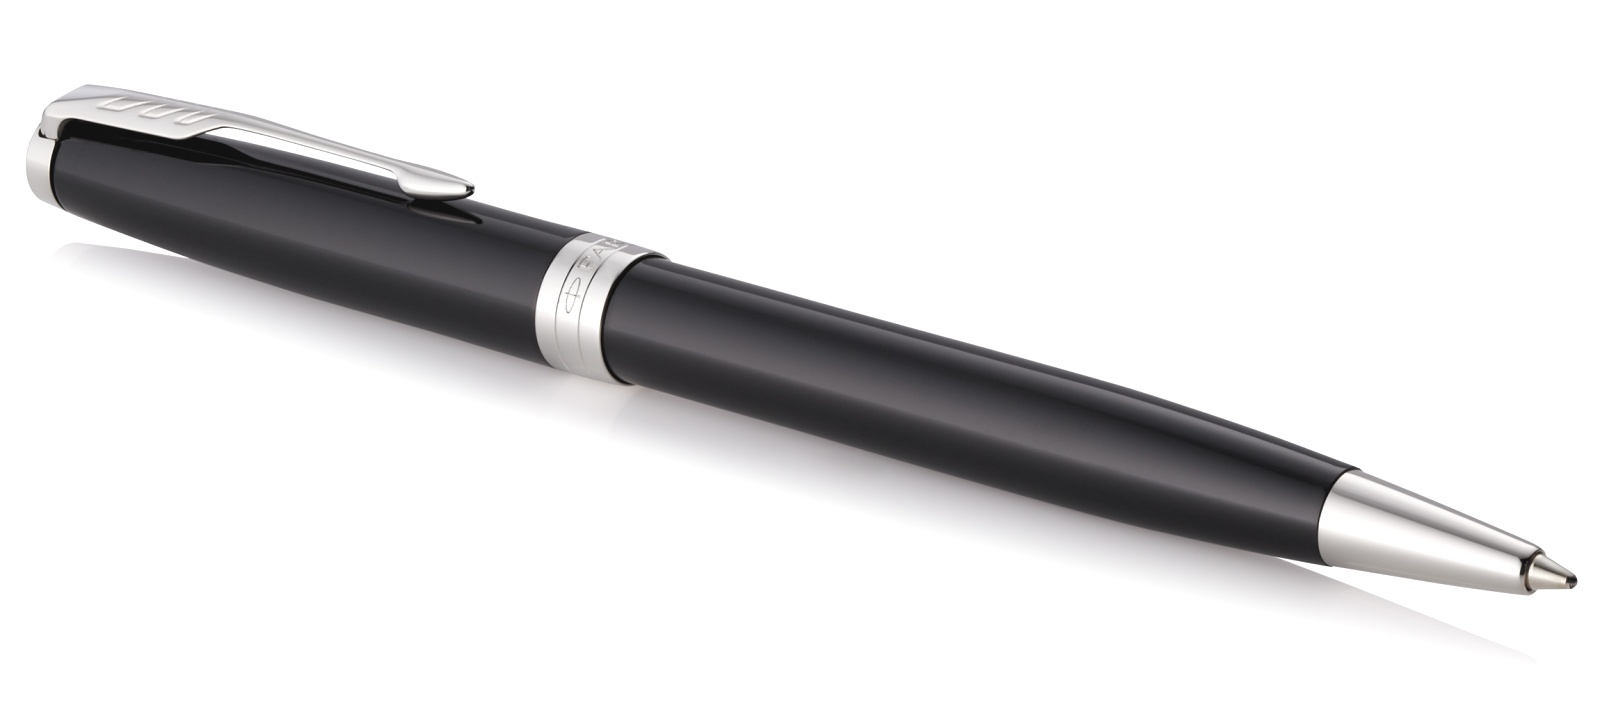  Шариковая ручка Parker Sonnet Core K530, Lacquer Deep Black CT, фото 2